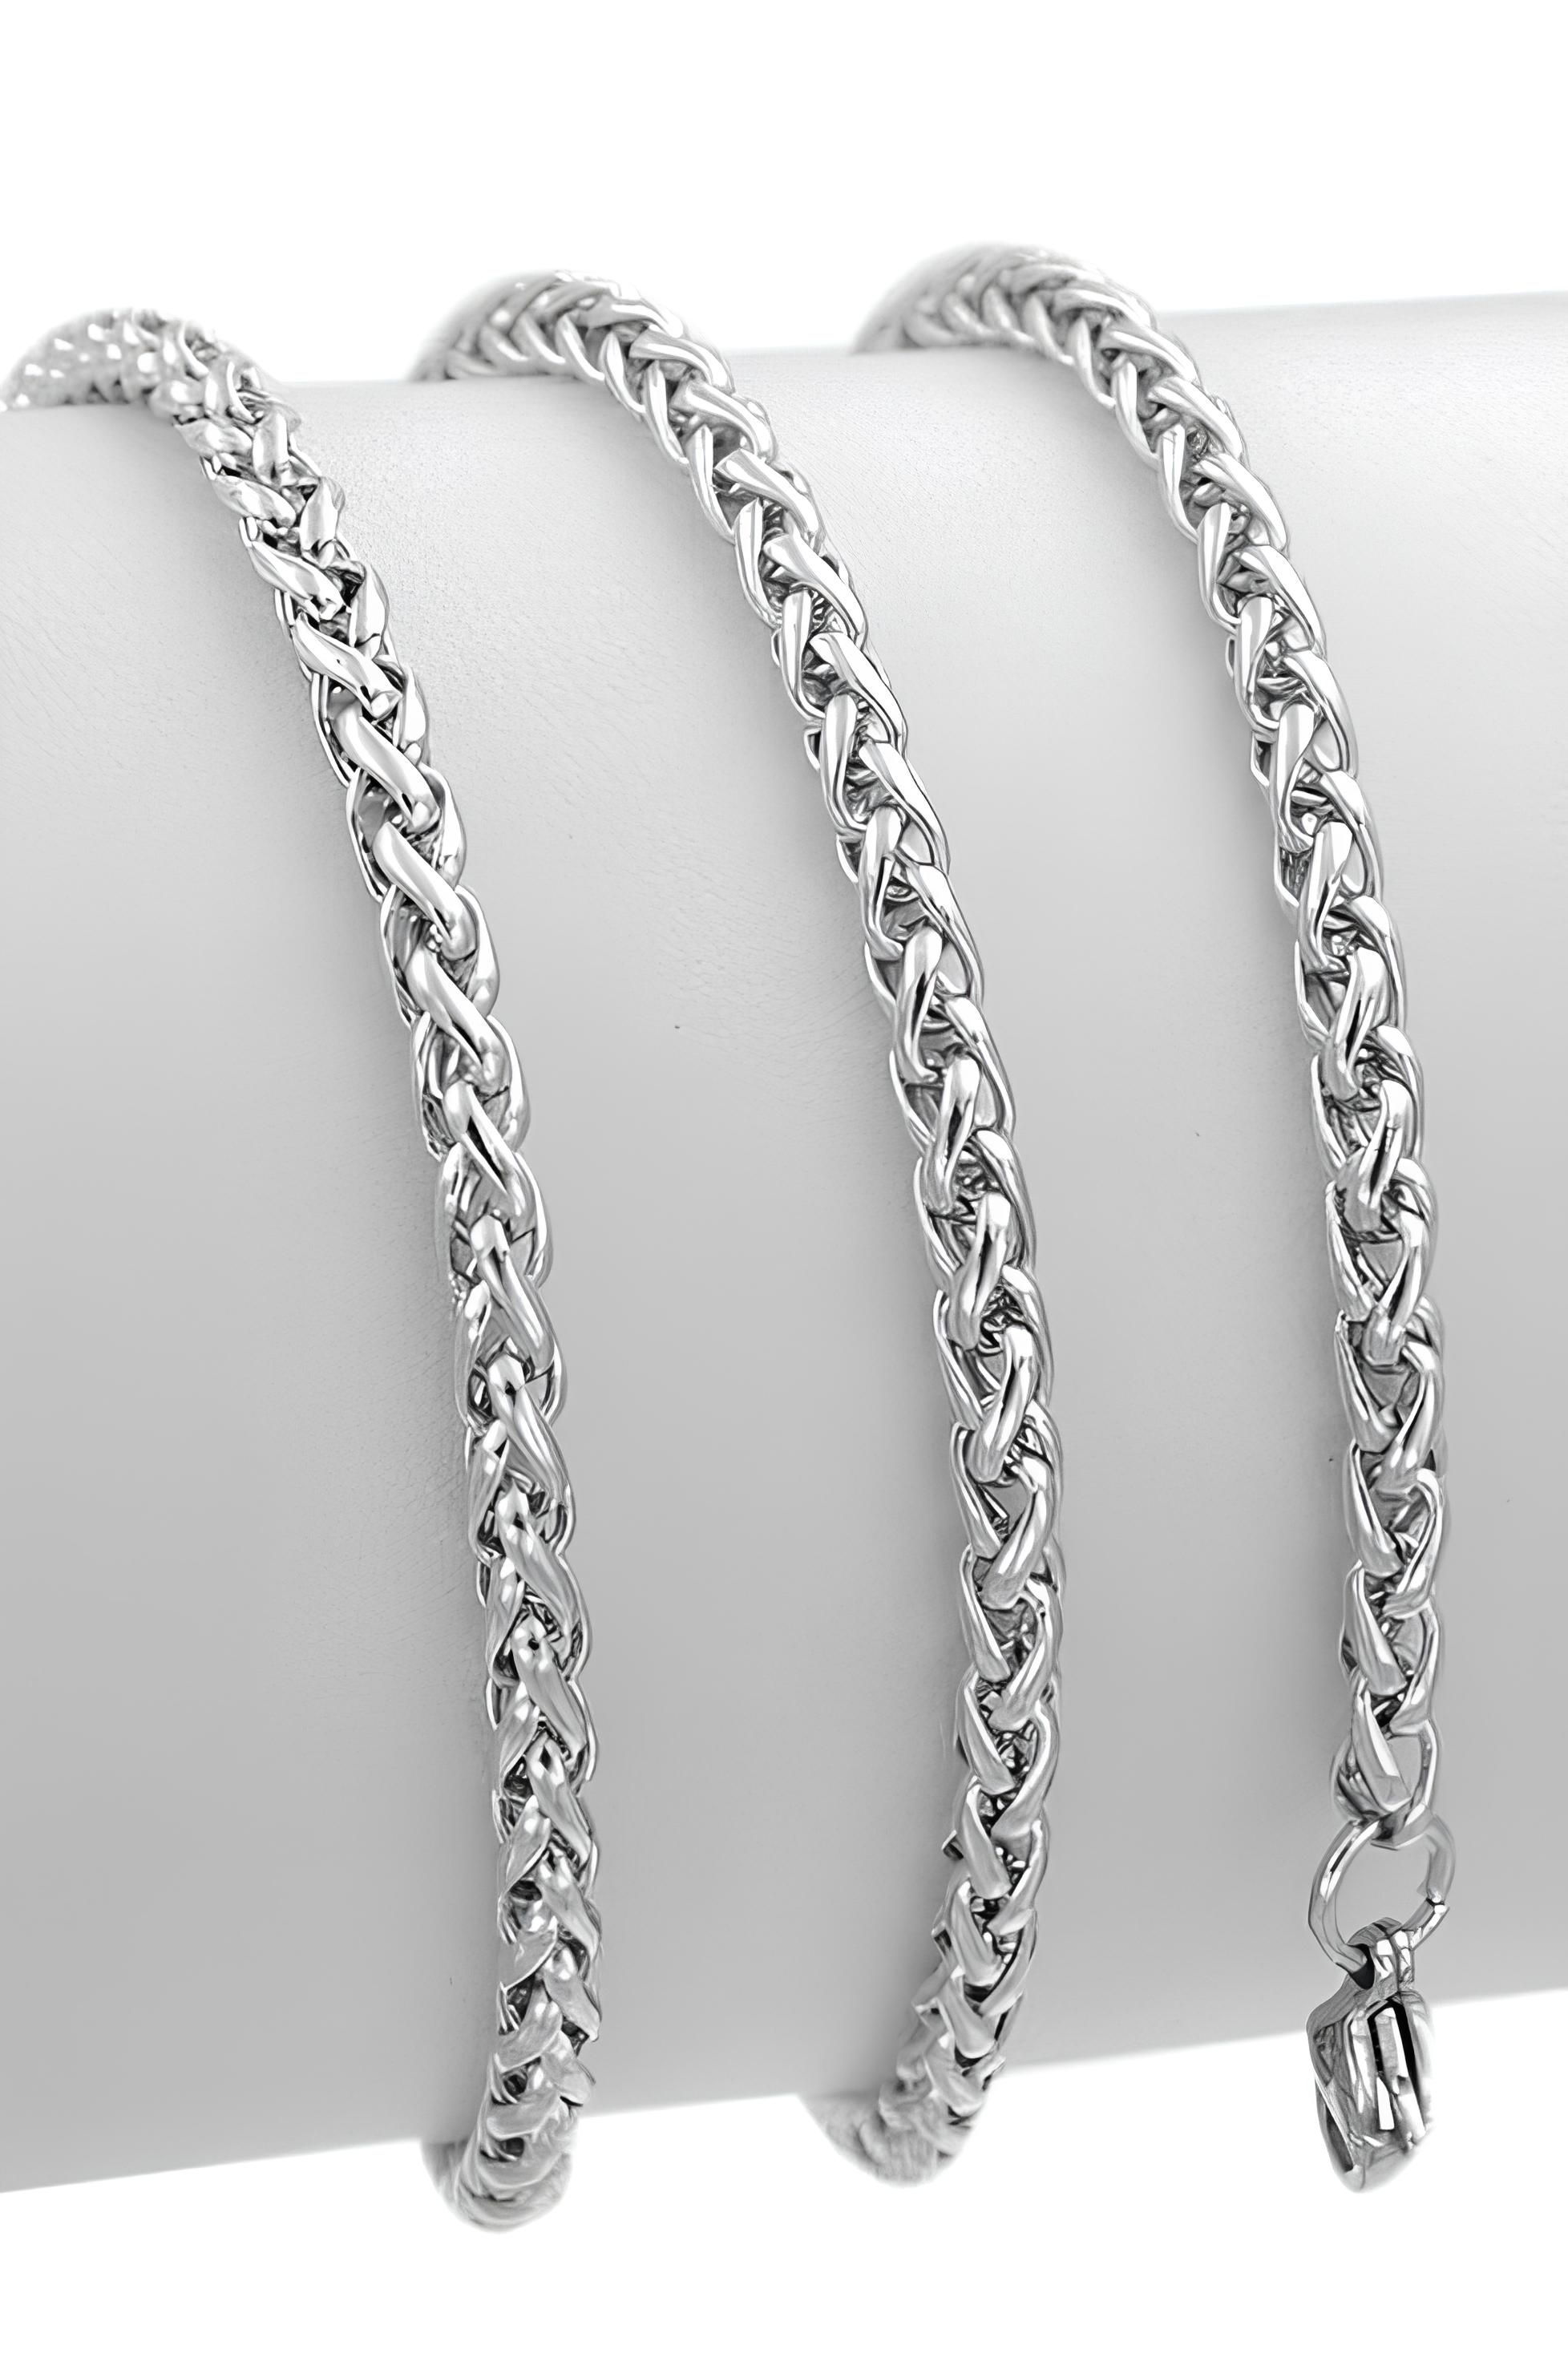 Spor Yuvarlak Tilki Kuyruğu Erkek Çelik Zincir Kolye 5mm k60 - Beyaz